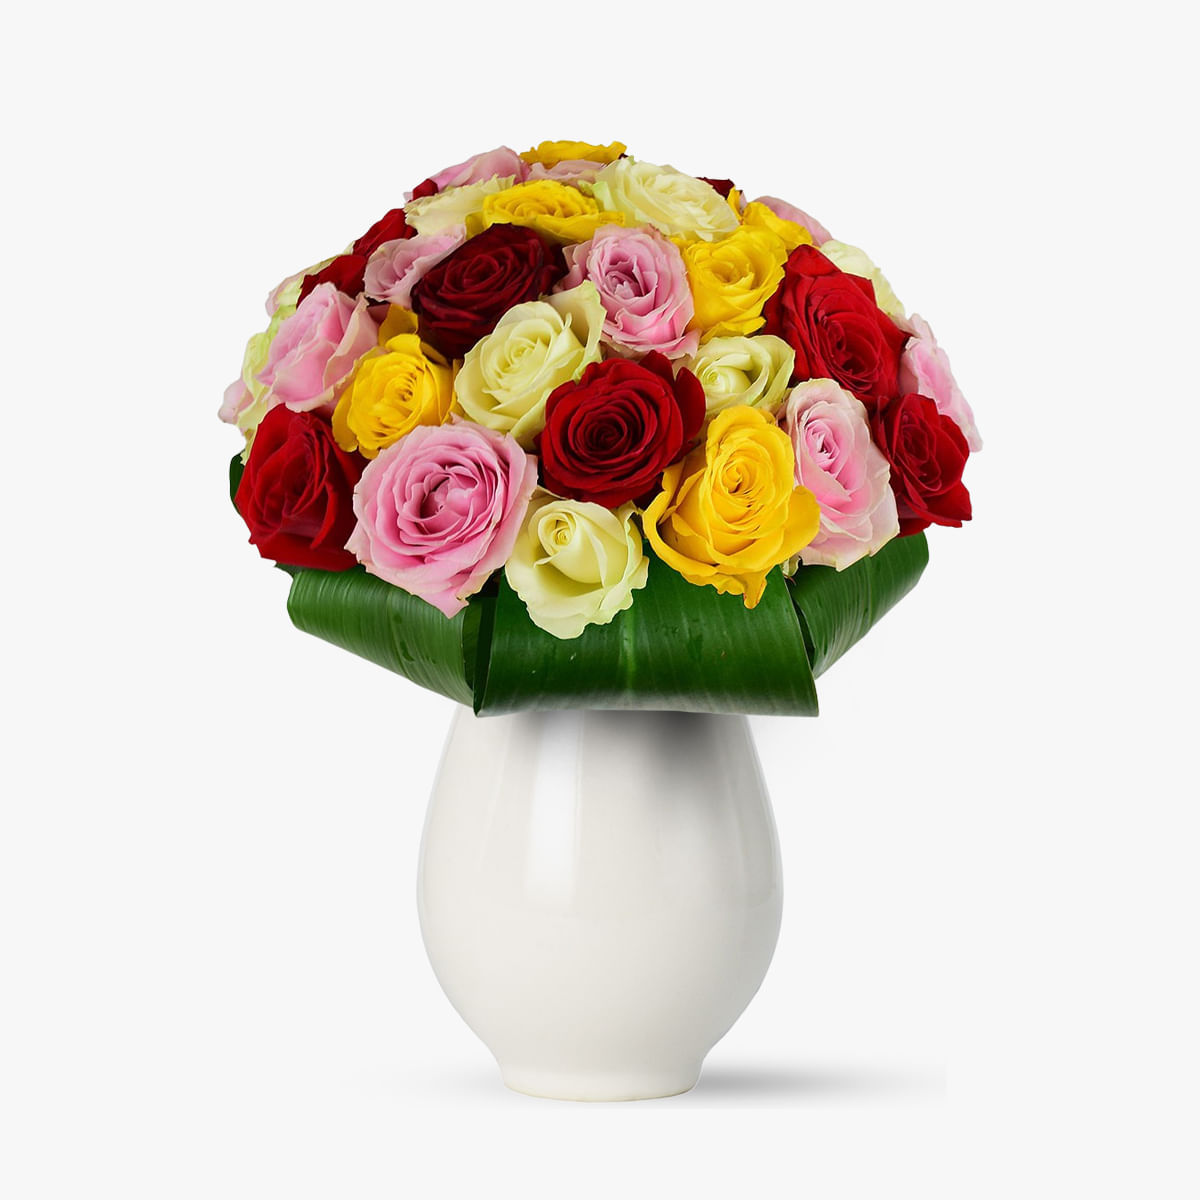 Buchet de 45 trandafiri multicolori – Standard Buchet